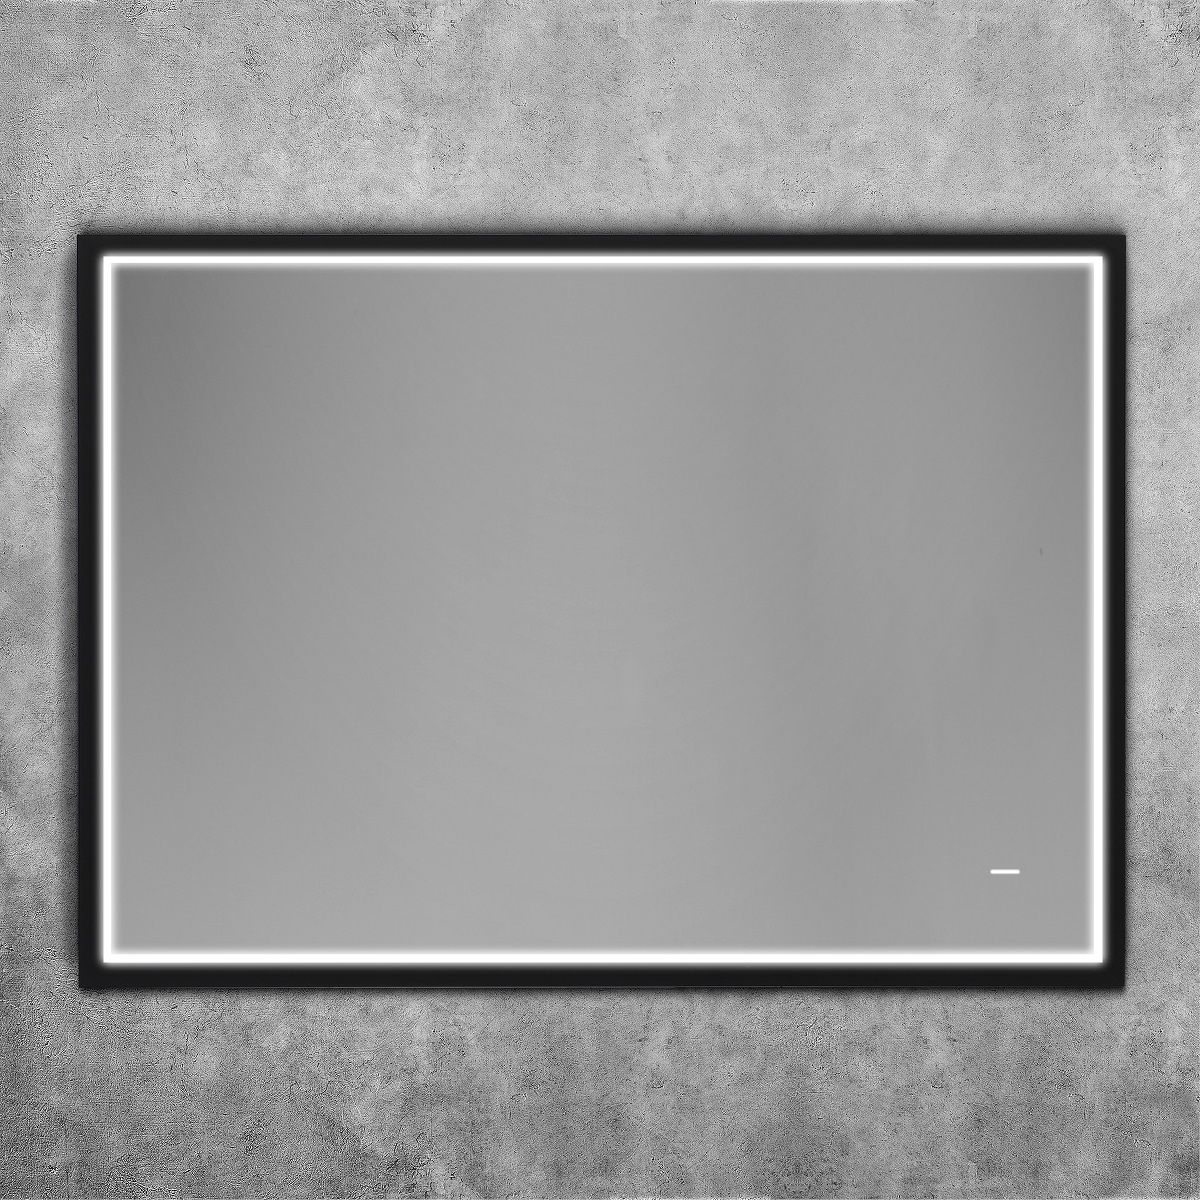 Зеркало Art&Max Aversa 90x65 с подсветкой, AM-Ave-900-650-DS-F